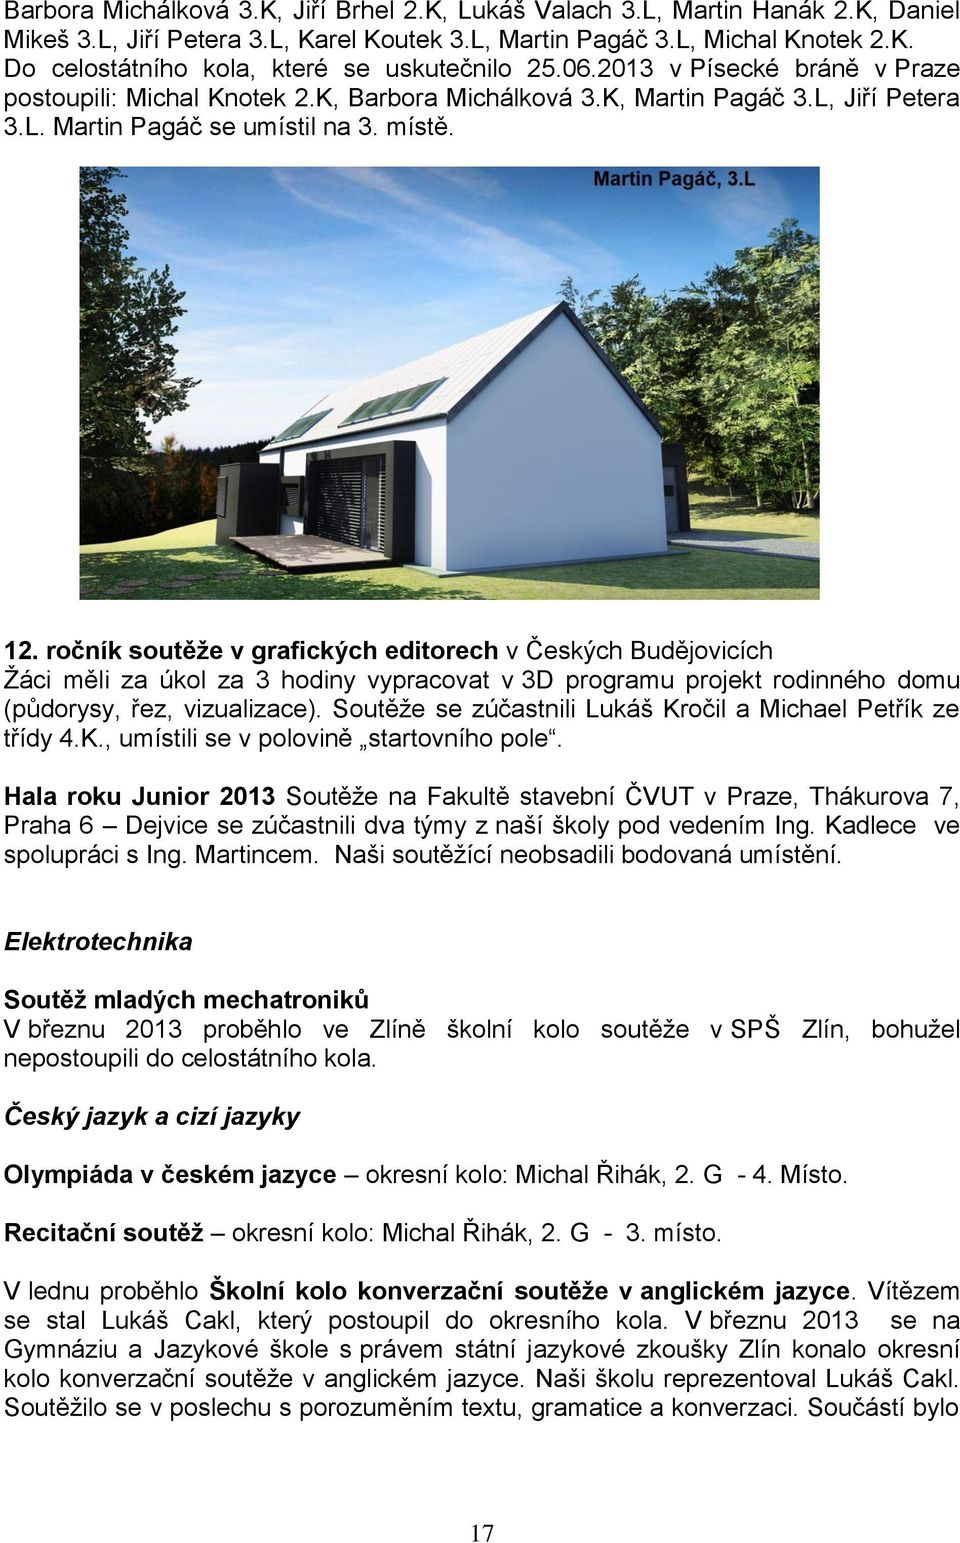 ročník soutěže v grafických editorech v Českých Budějovicích Žáci měli za úkol za 3 hodiny vypracovat v 3D programu projekt rodinného domu (půdorysy, řez, vizualizace).